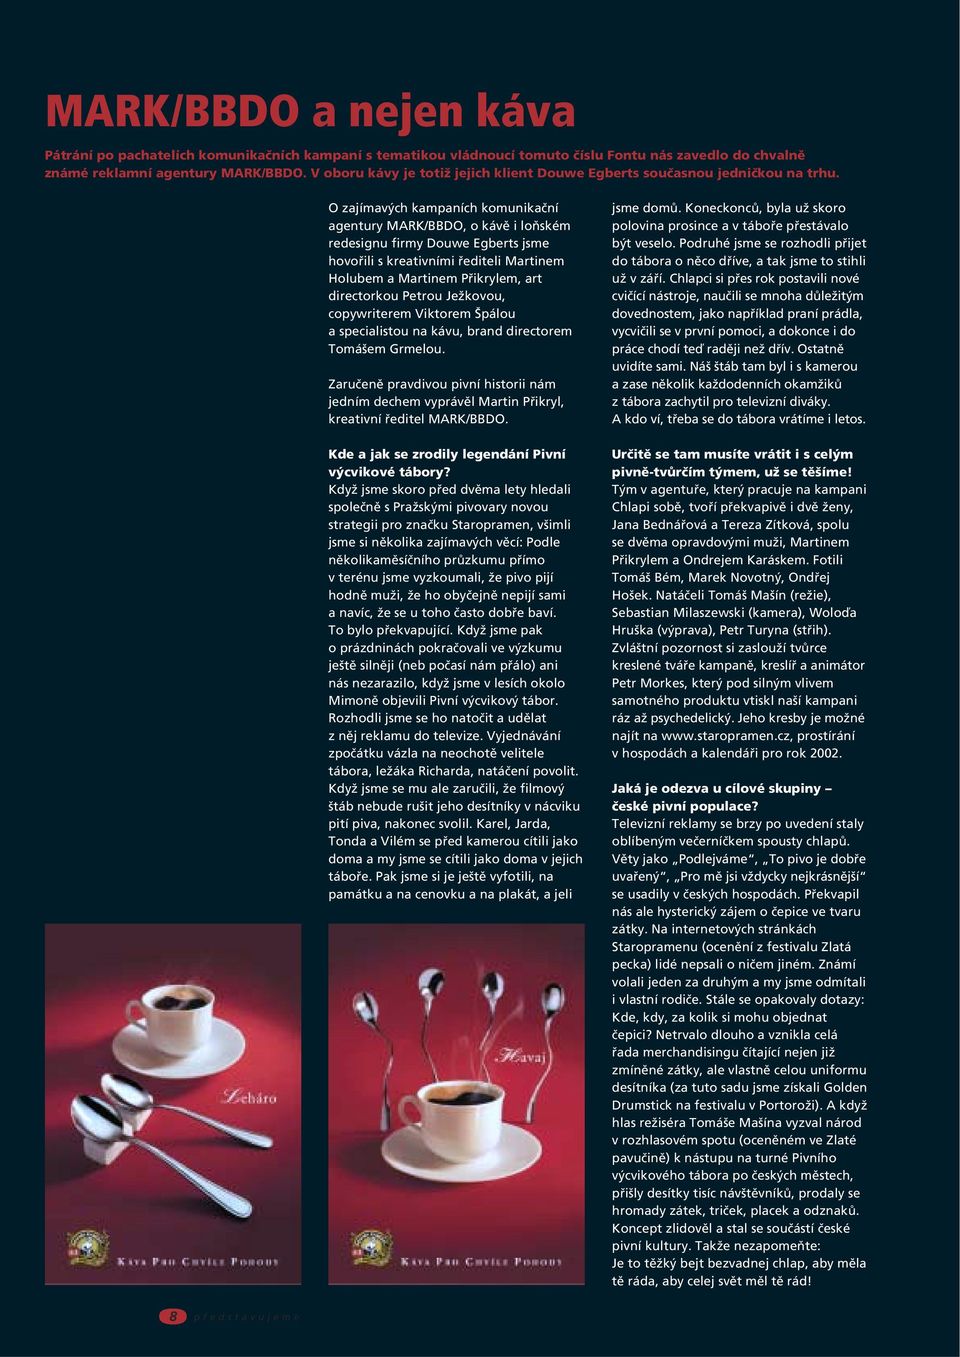 O zajímavých kampaních komunikační agentury MARK/BBDO, o kávě i loňském redesignu firmy Douwe Egberts jsme hovořili s kreativními řediteli Martinem Holubem a Martinem Přikrylem, art directorkou